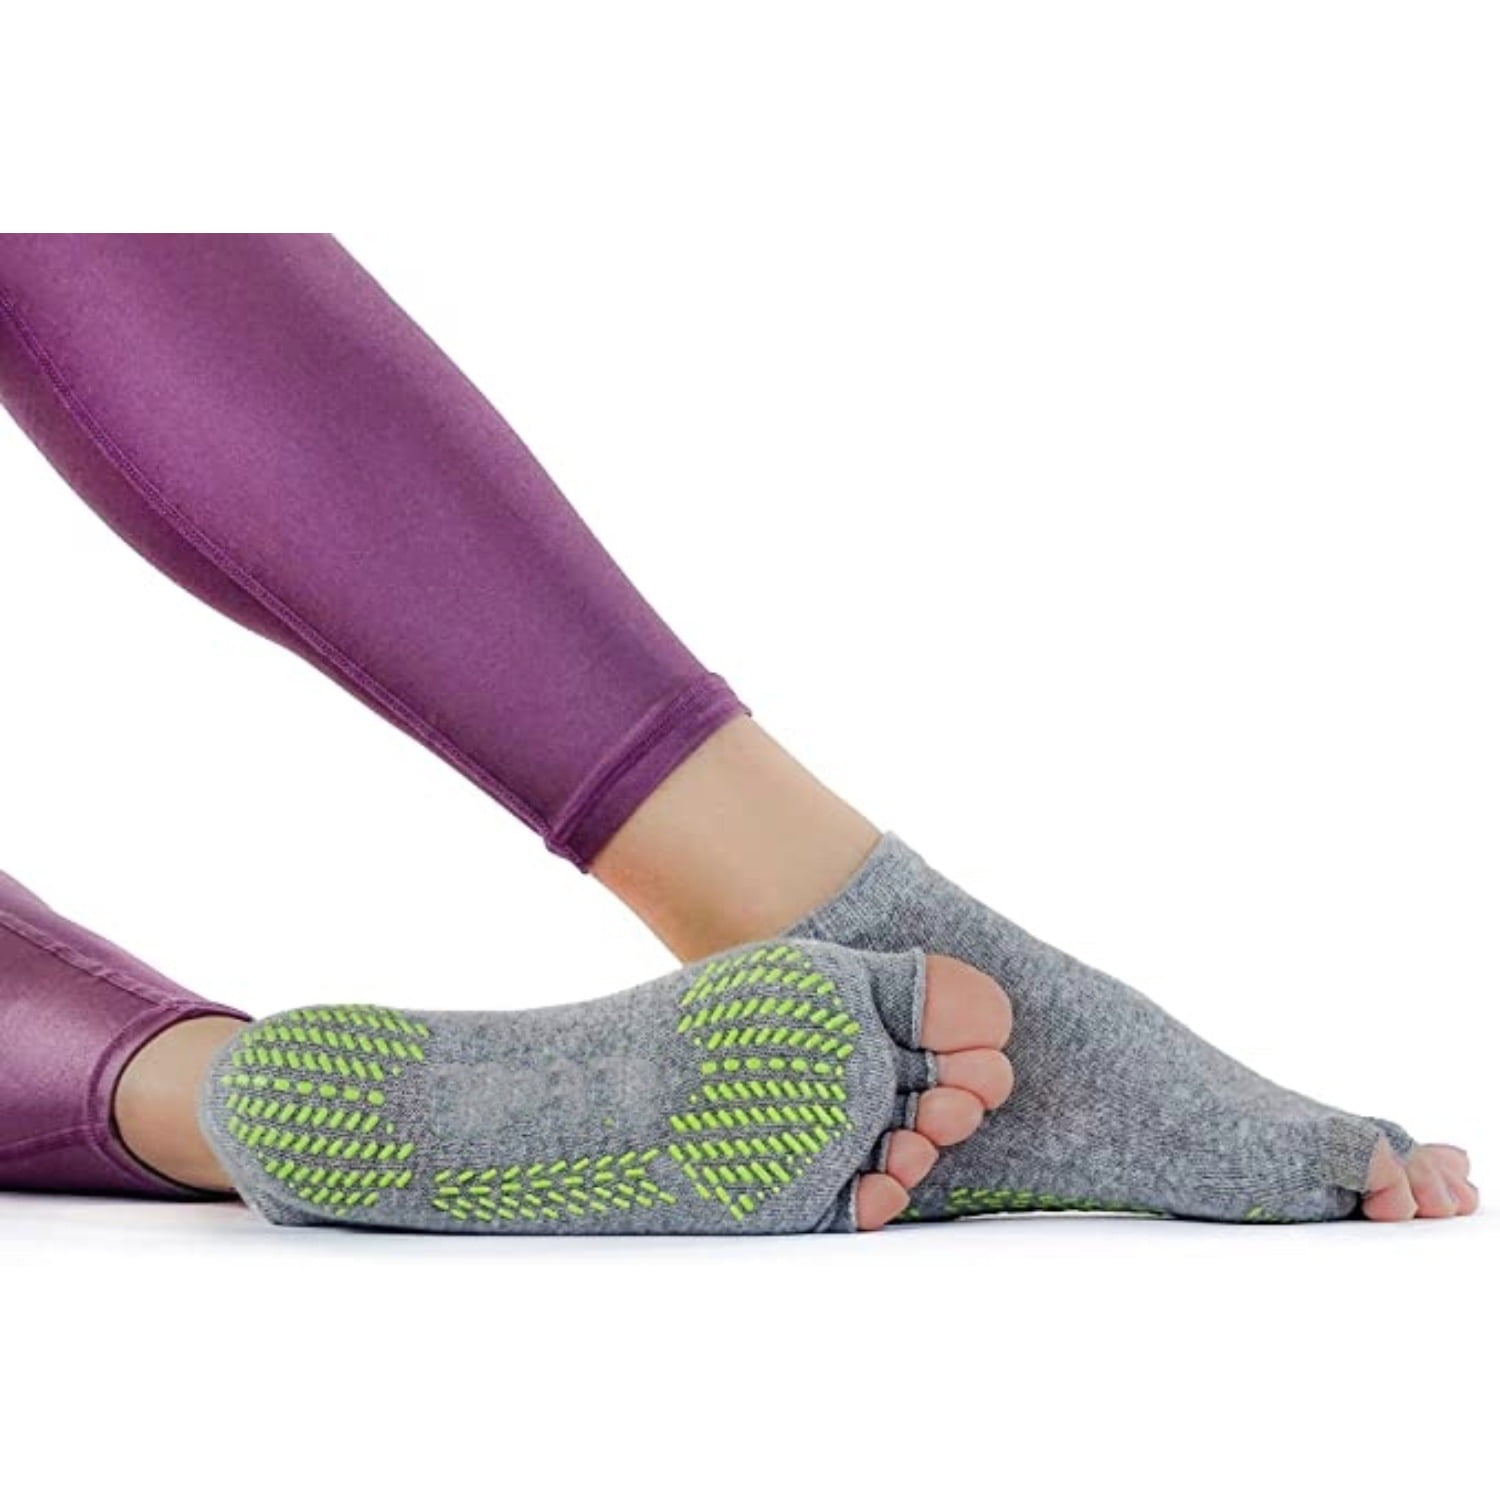 Toeless Non Slip Yoga Socks for Grip Half Toe Socks for Pilates or